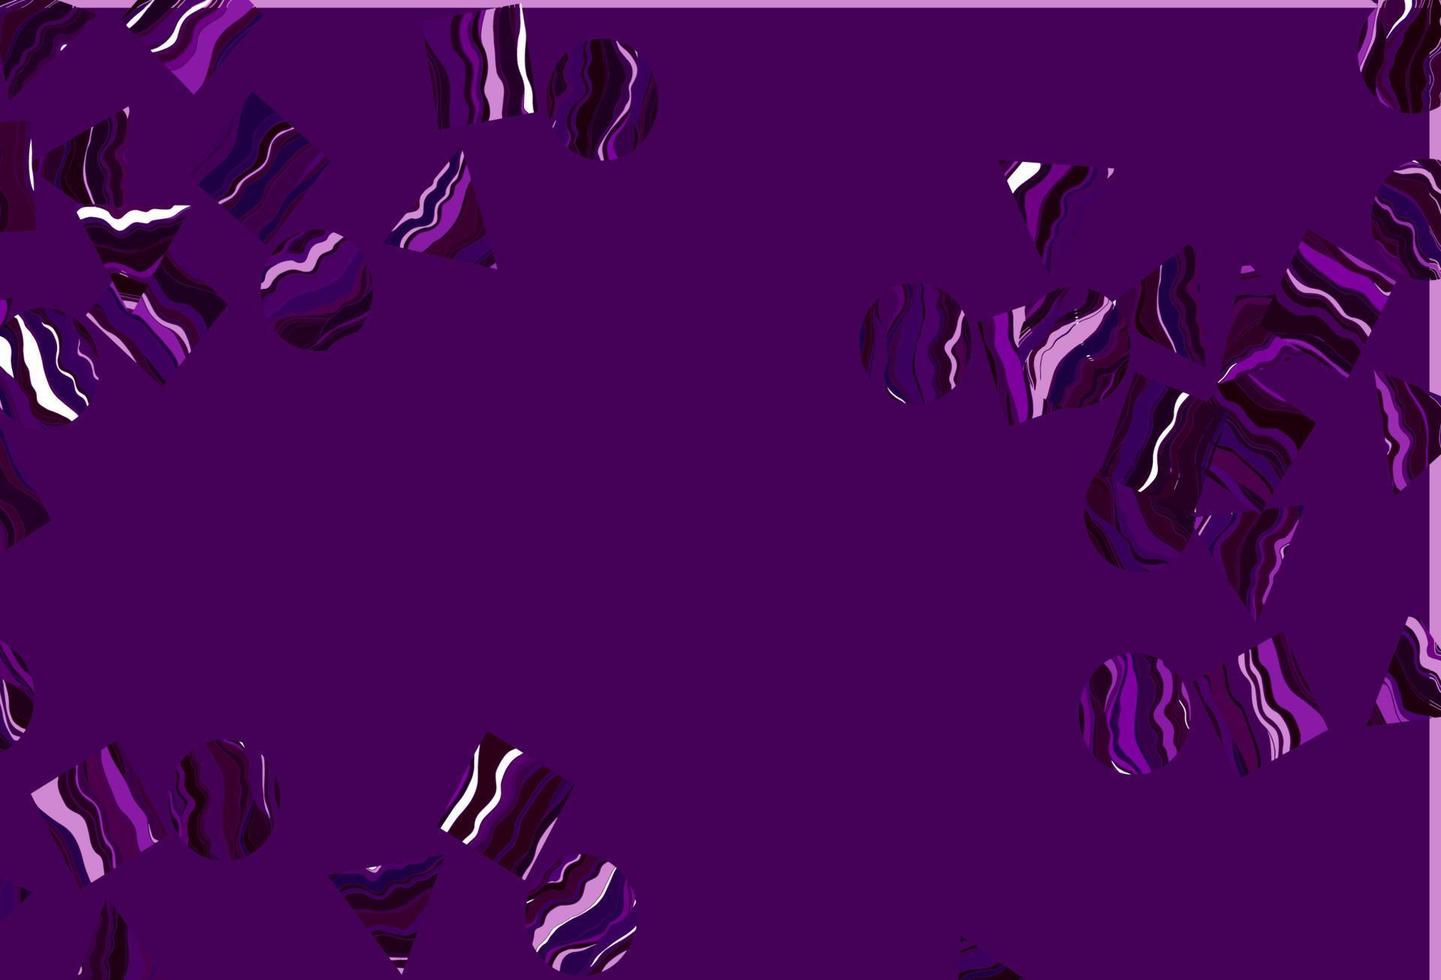 patrón de vector púrpura claro en estilo poligonal con círculos.